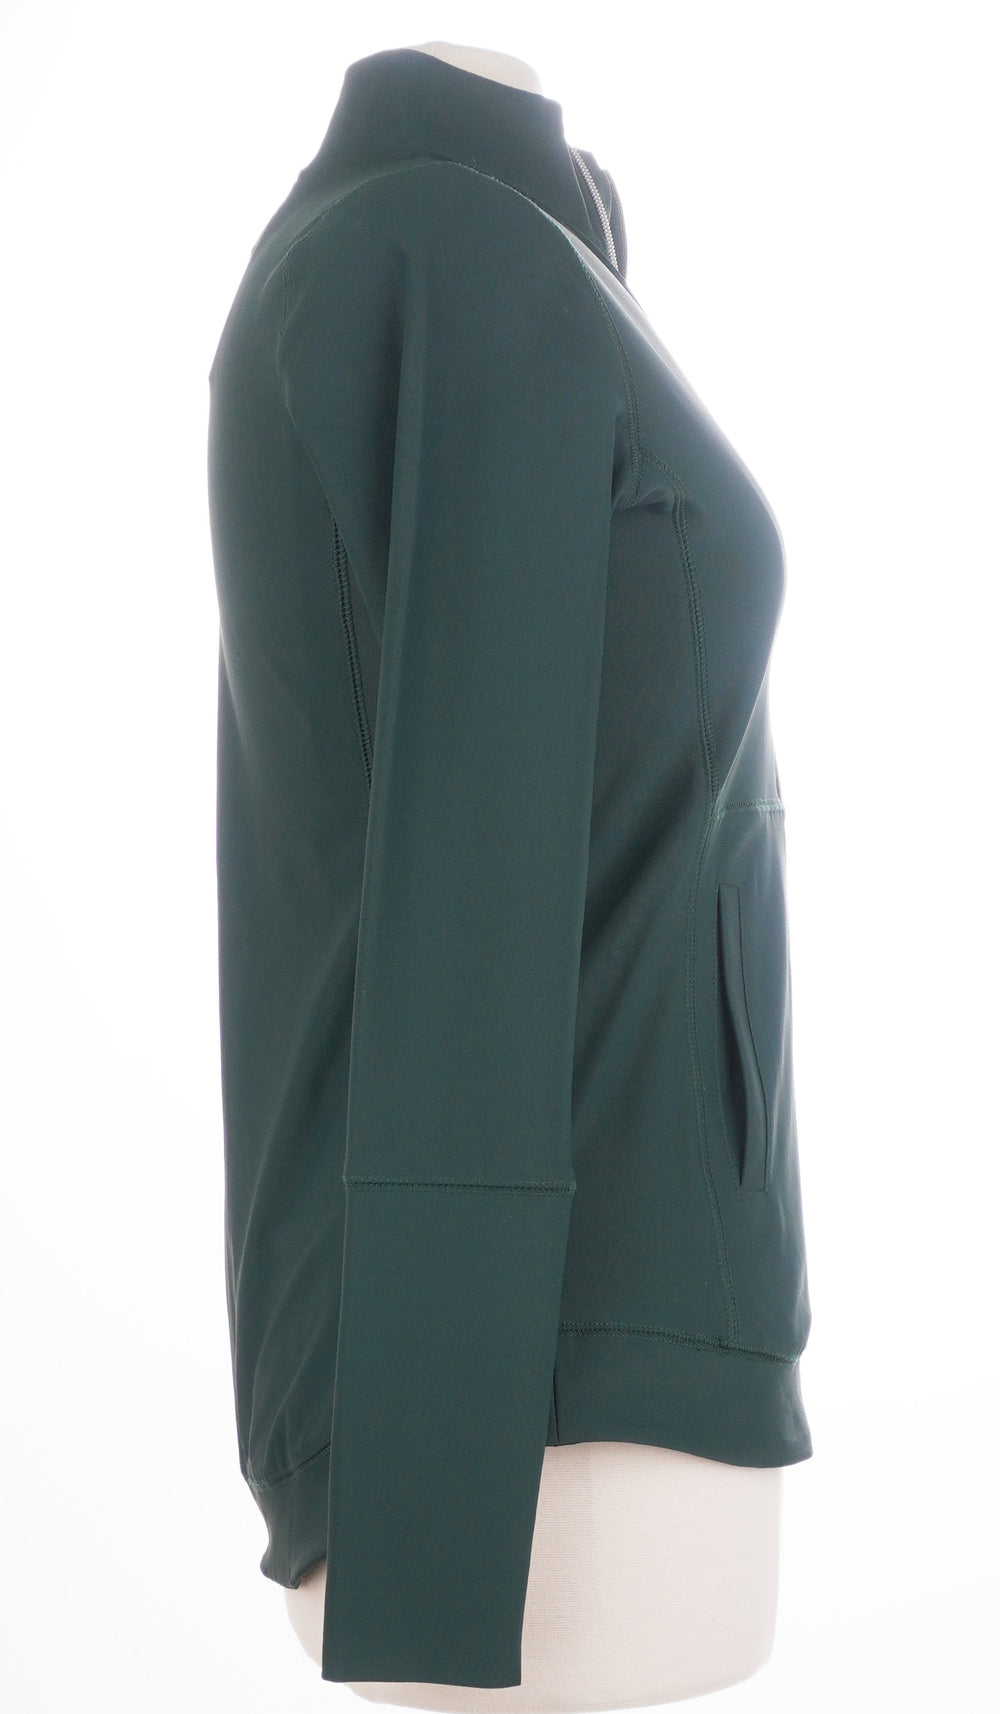 Jofit Army Green Zip Up Jacket - Size Small - Skorzie